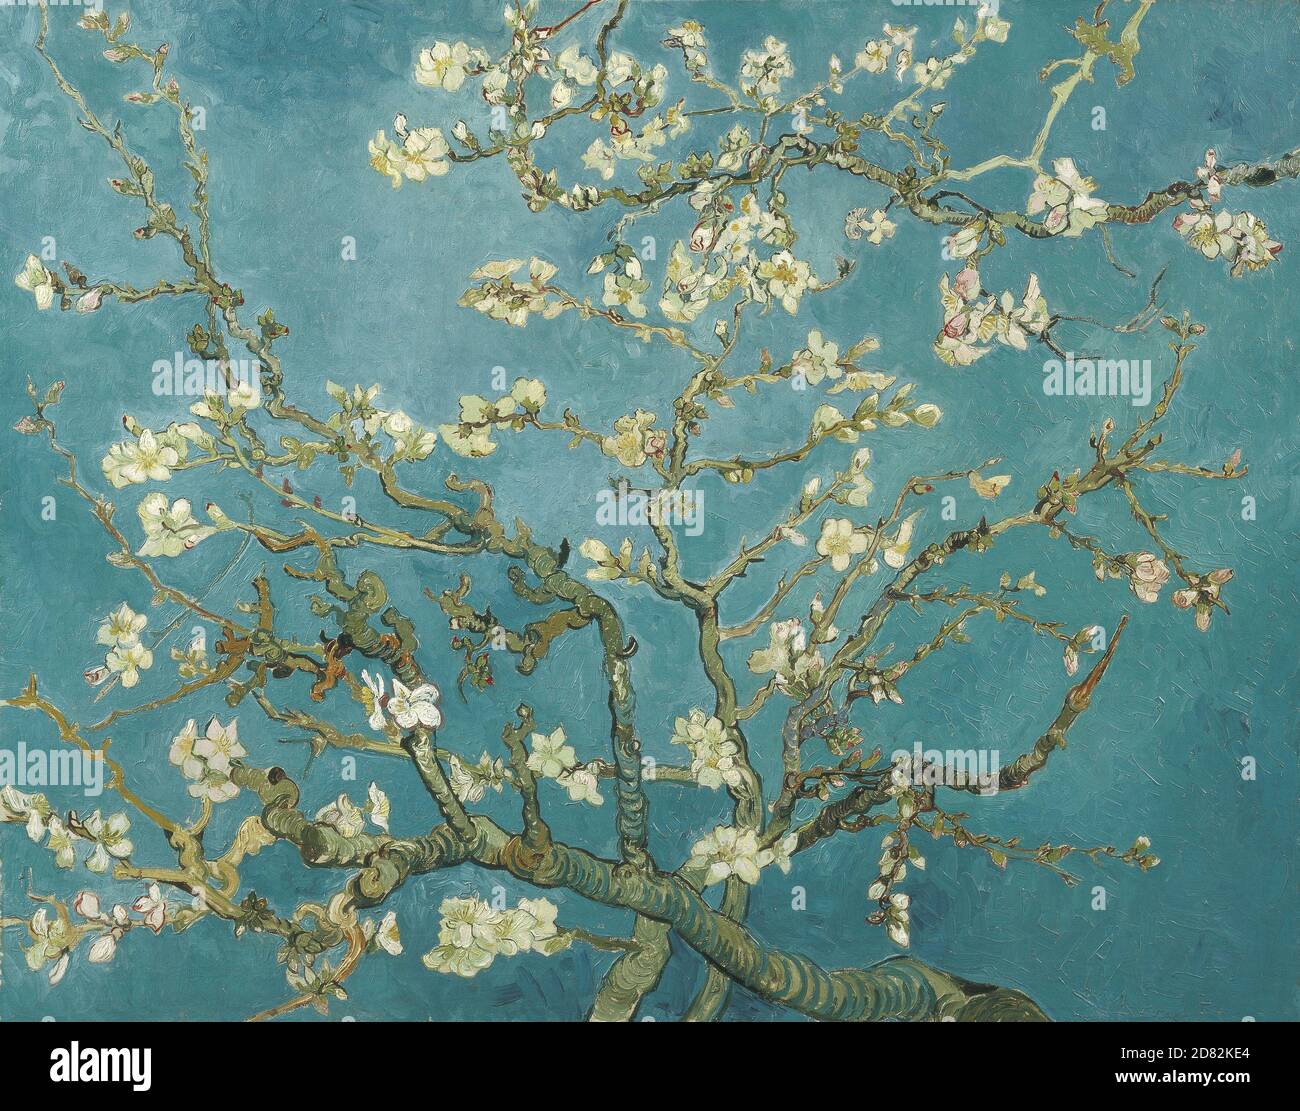 Titel: Mandelblüte Schöpfer: Vincent van Gogh Datum: 1890 Medium: Öl auf Leinwand Maße: 73.3 x 92.4 cm Ort: Van Gogh Museum, Amsterdam Stockfoto